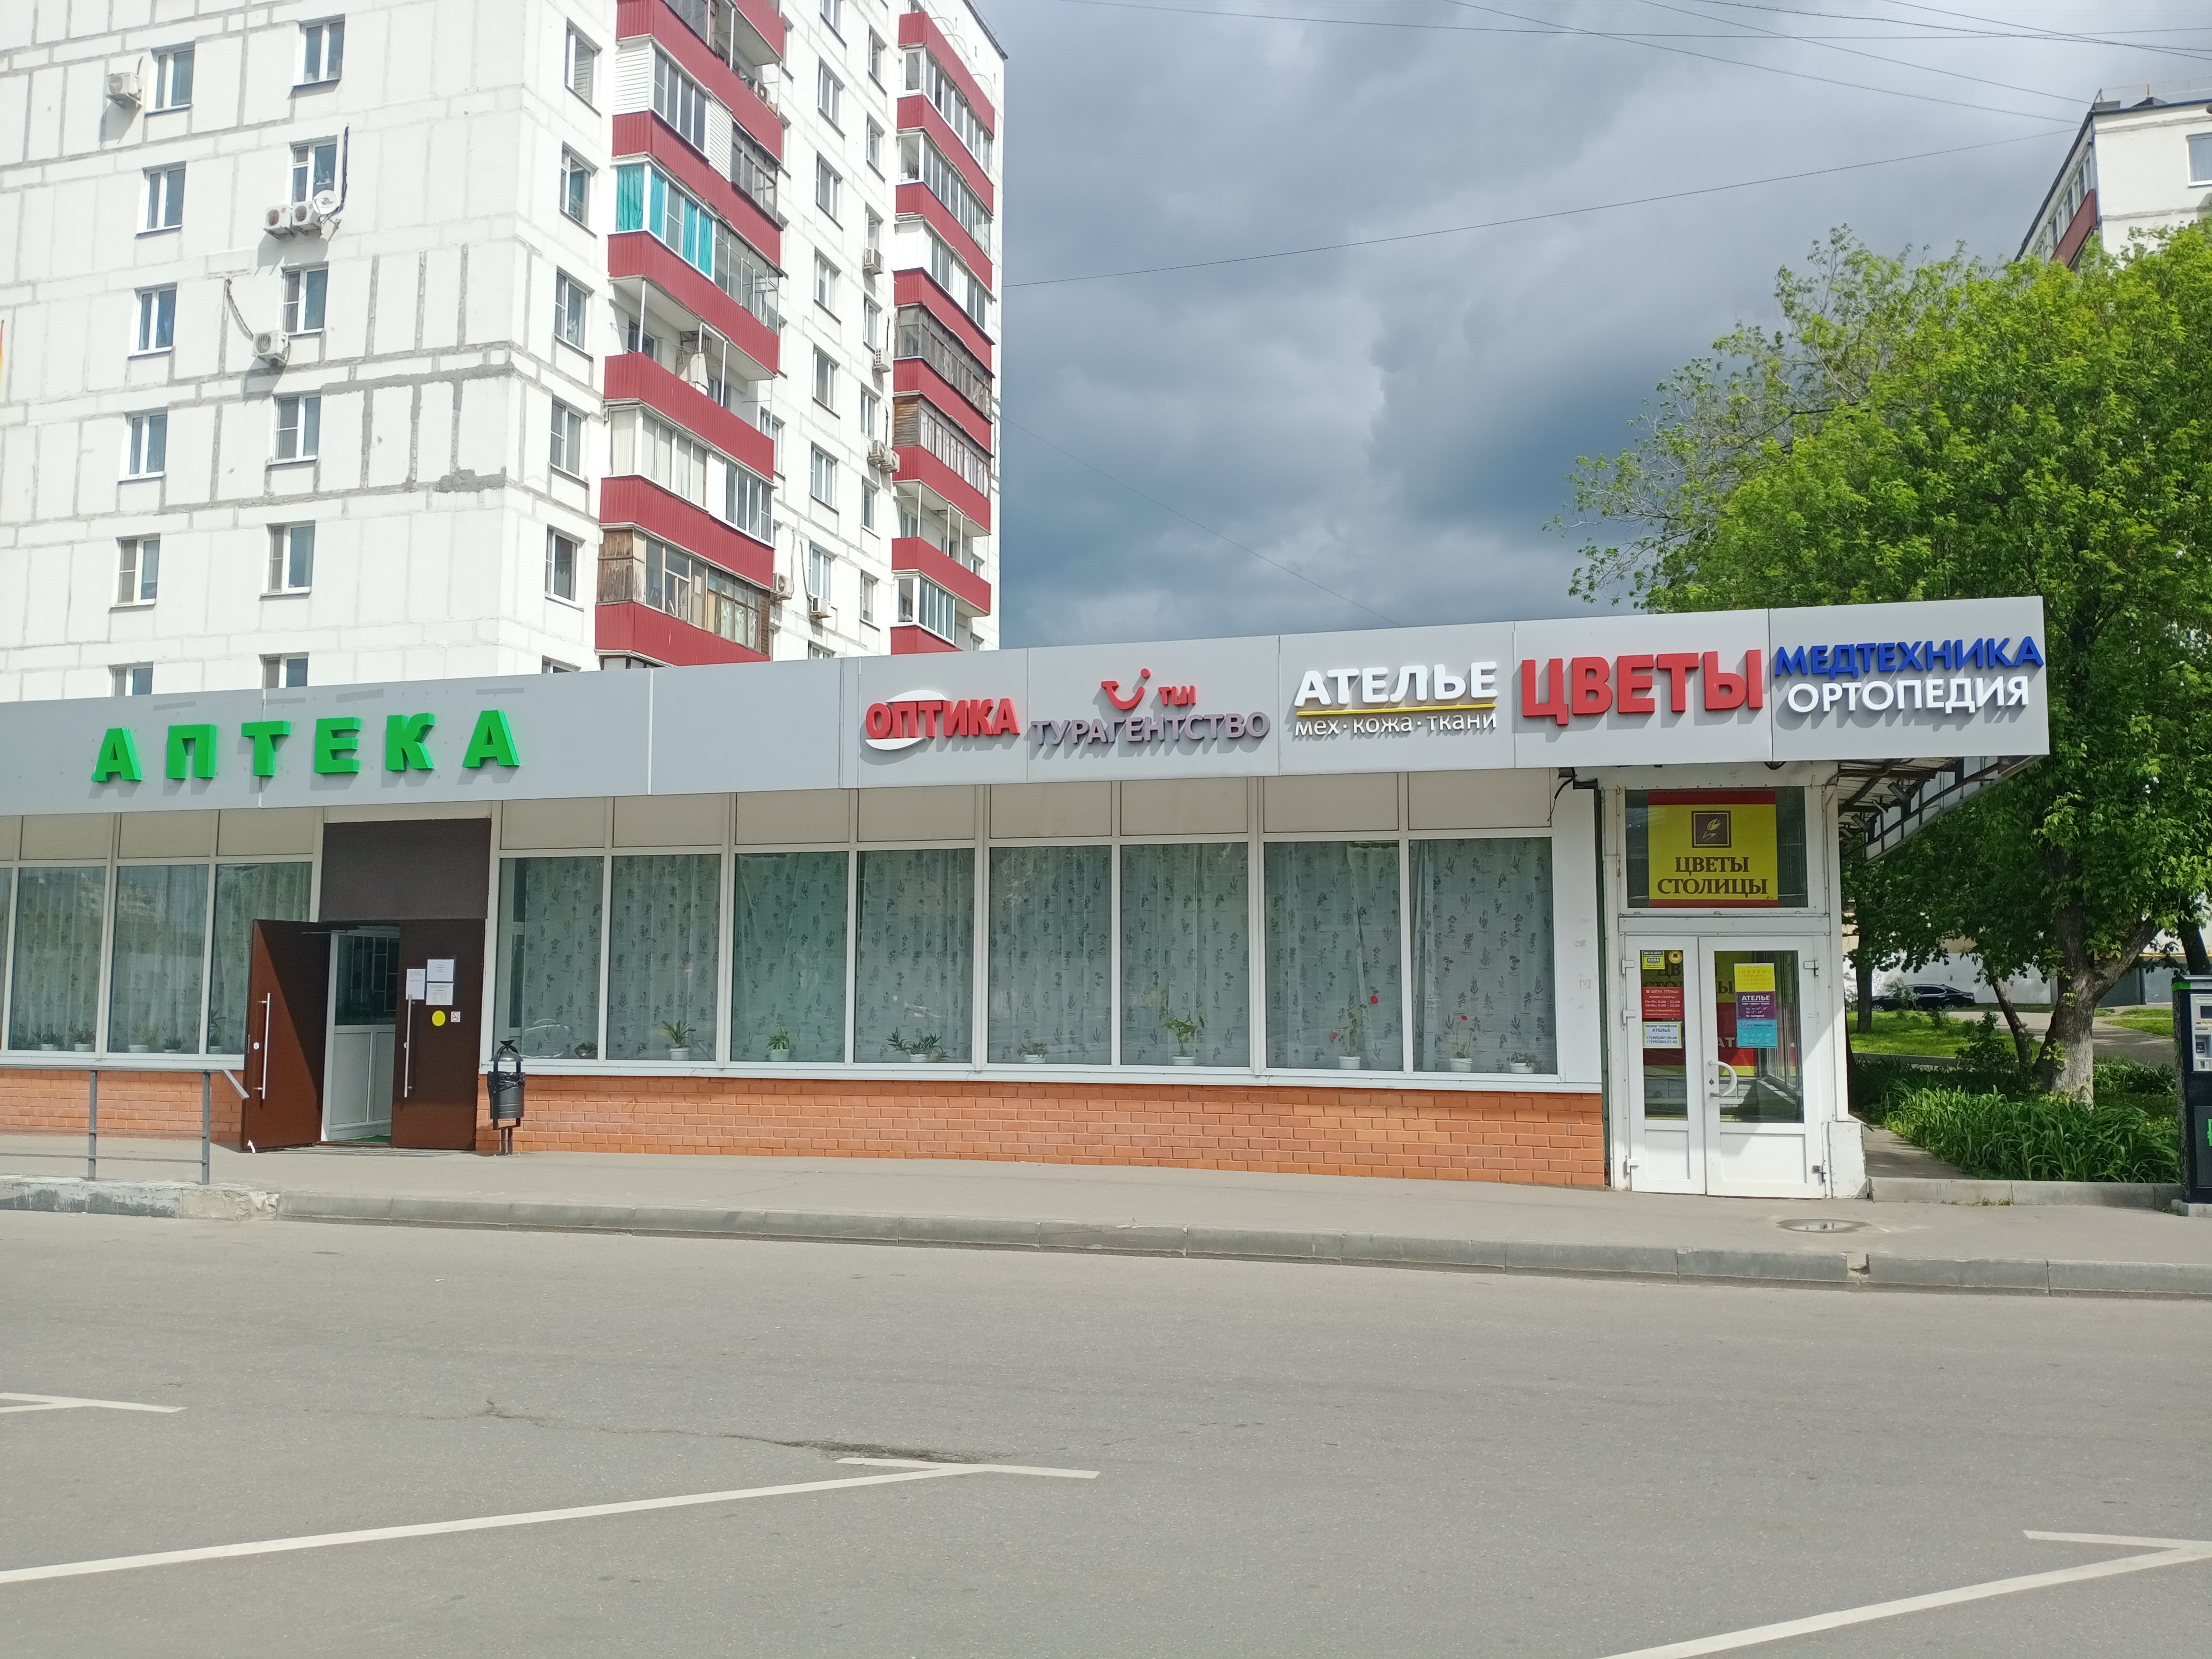 Нелатон.ру, магазин медтехники и ортопедии, Рязанский проспект, 71 к1, цокольный этаж, около Швейного ателье